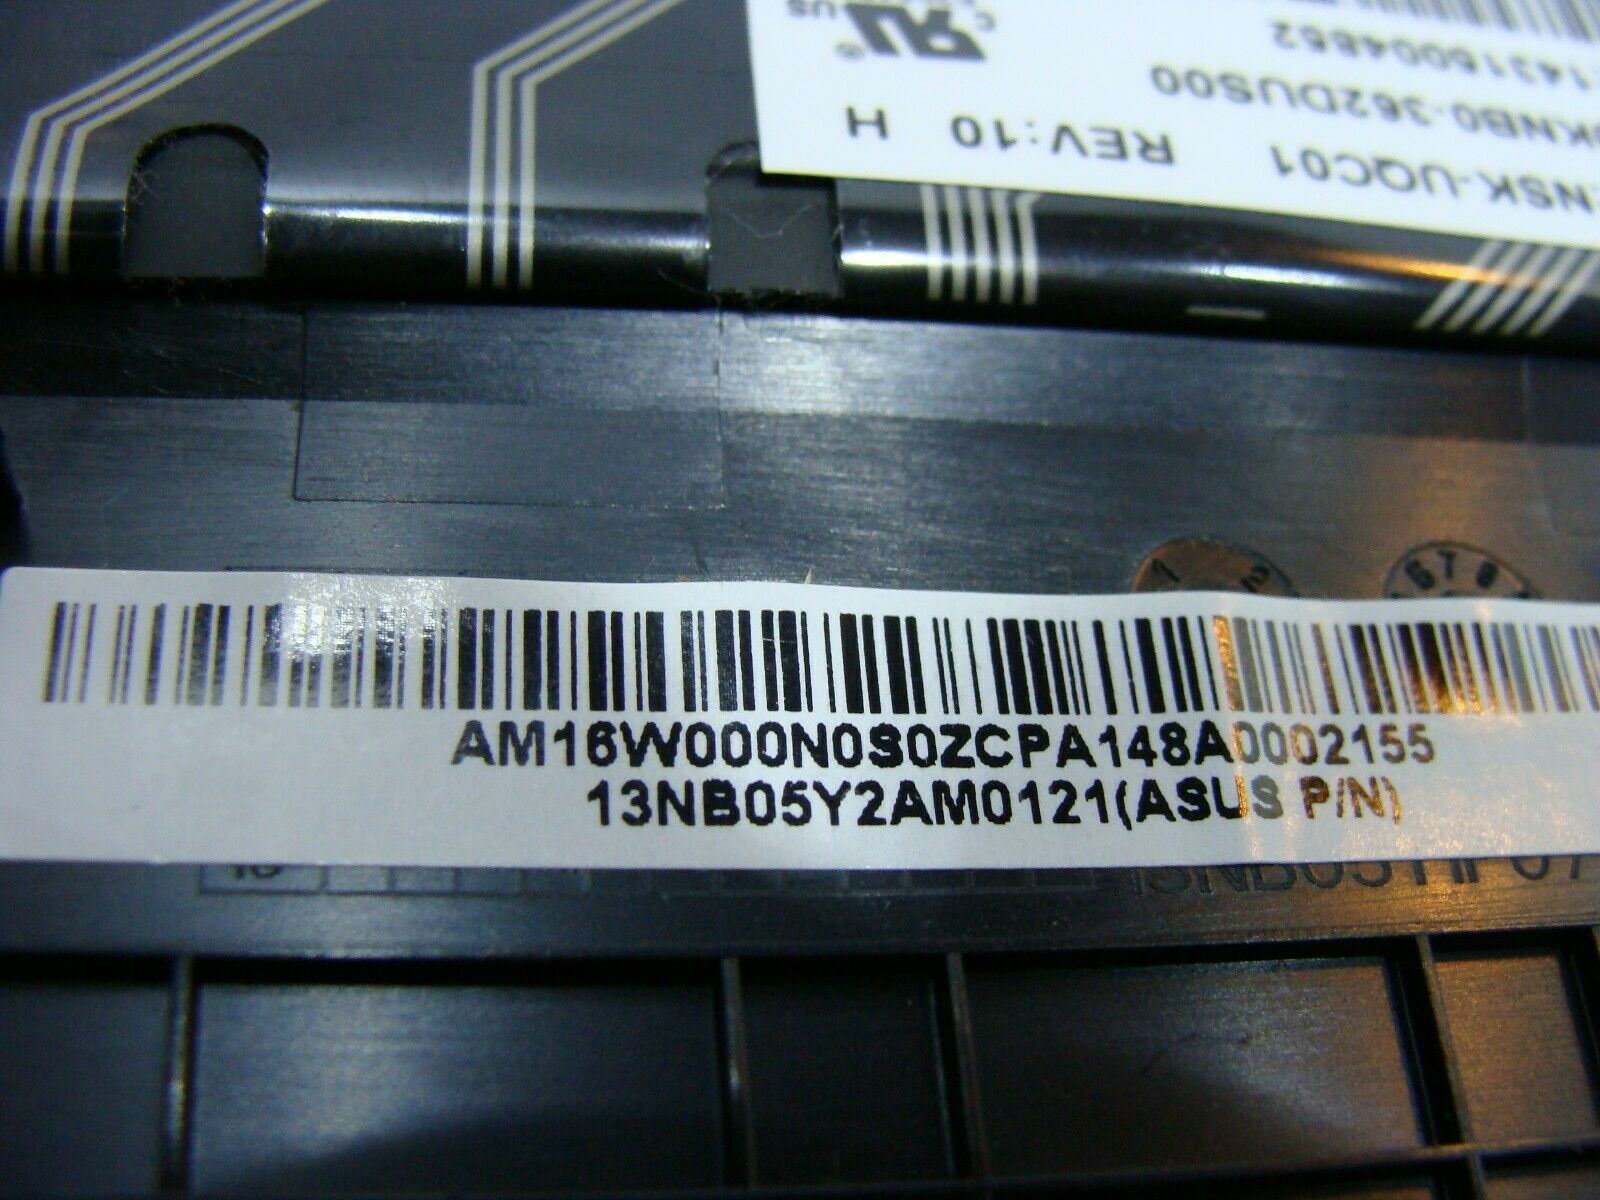 Asus Q302LA-BBI5T14 13.3